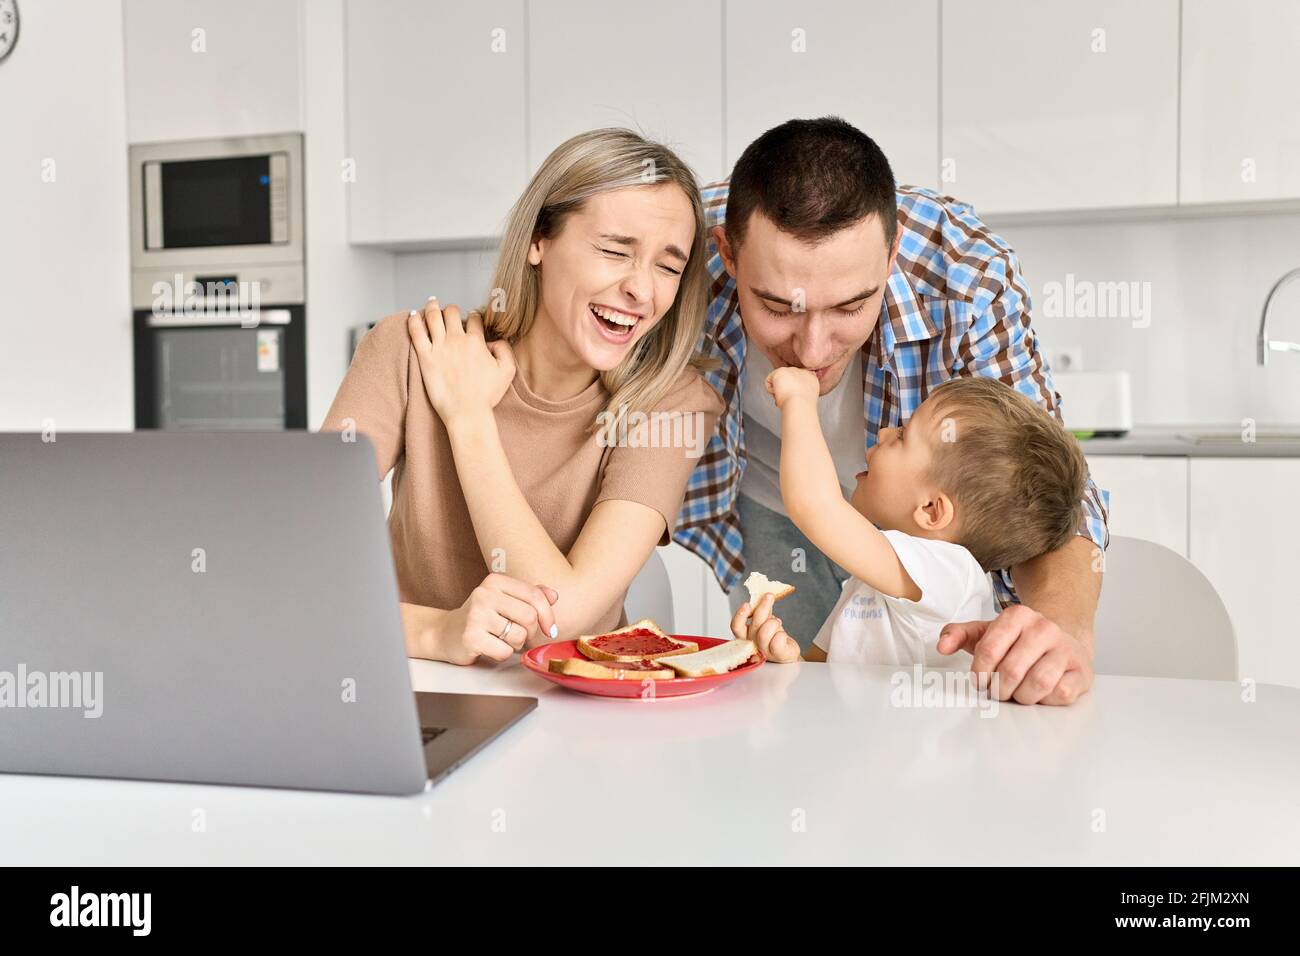 Une bonne famille avec un enfant, un fils, qui s'amuse à manger des toasts dans la cuisine. Banque D'Images